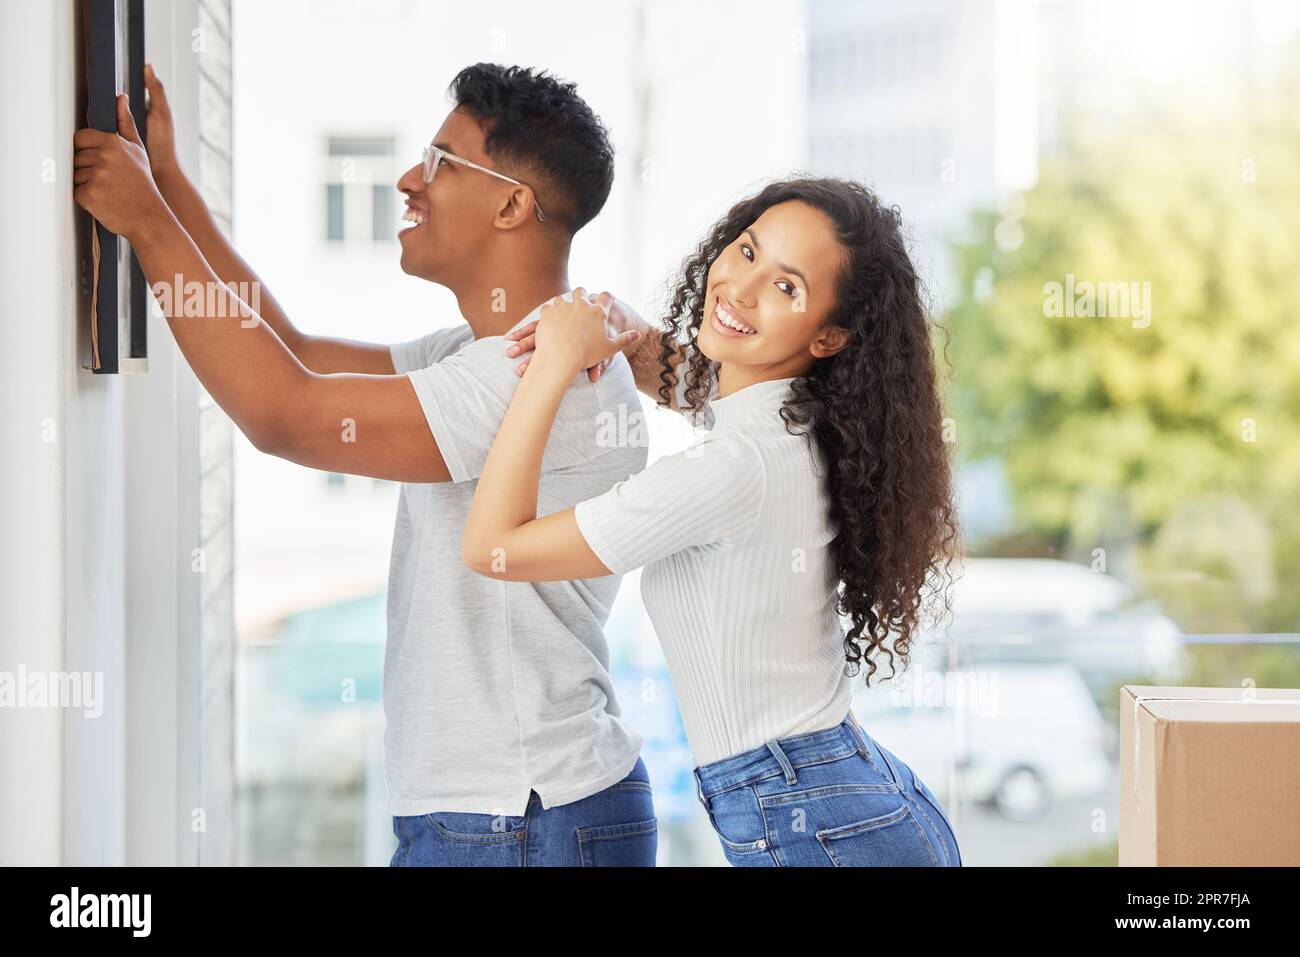 Mettez-nous dans un cadre parce que l'image était parfaite. Photo d'un jeune couple décorant leur nouvelle maison. Banque D'Images